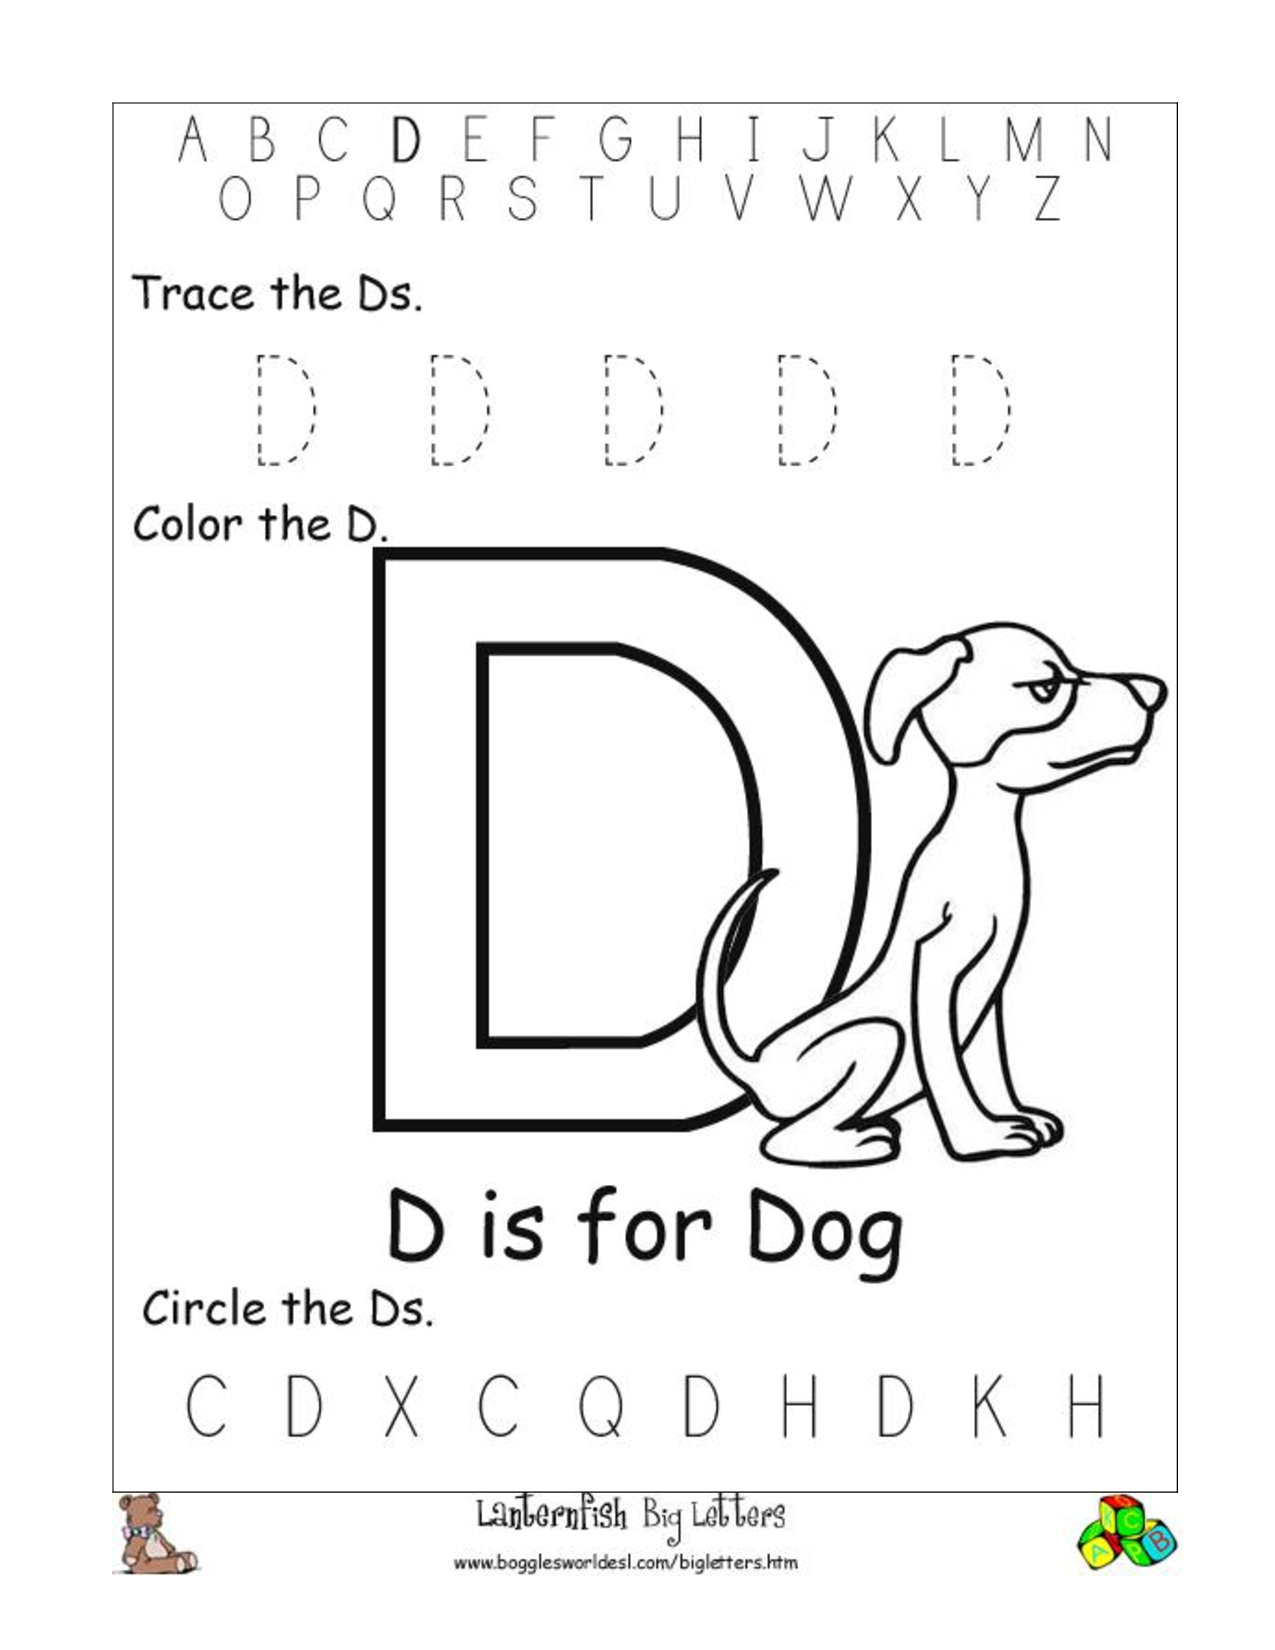 6 Best Images of Printable Letter D Worksheets For ...